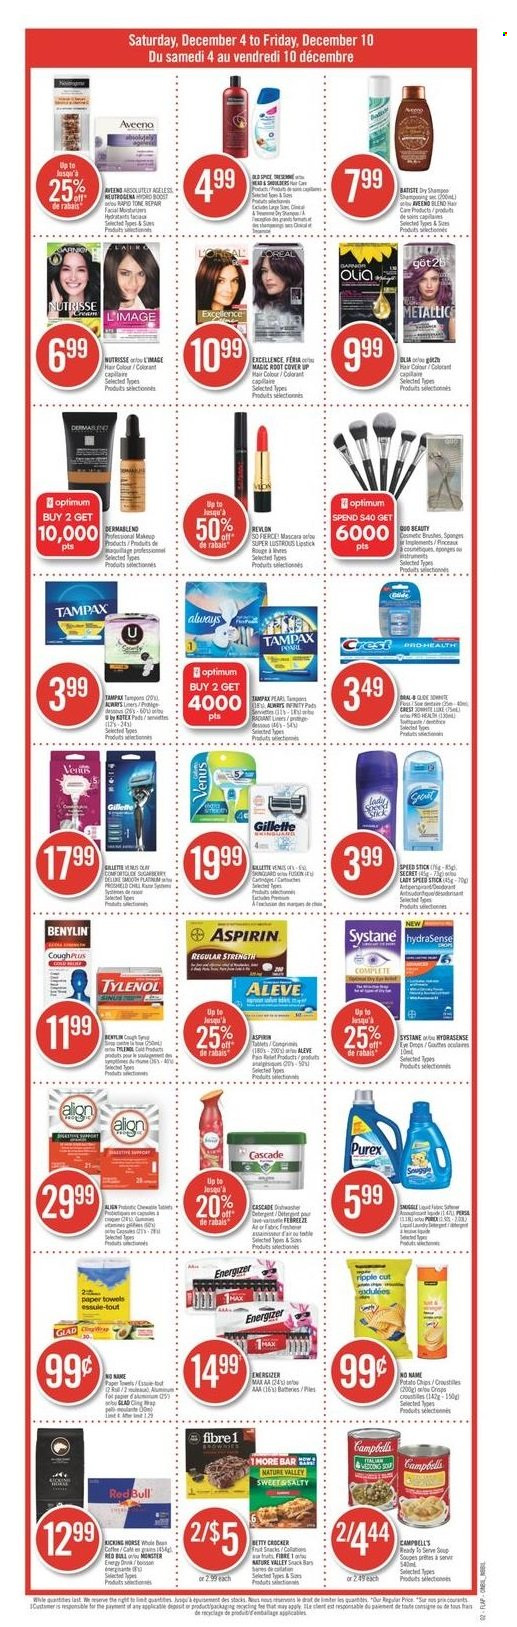 thumbnail - Circulaire Shoppers Drug Mart - 04 Décembre 2021 - 10 Décembre 2021 - Produits soldés - chips, Gillette, Systane, Tampax. Page 2.